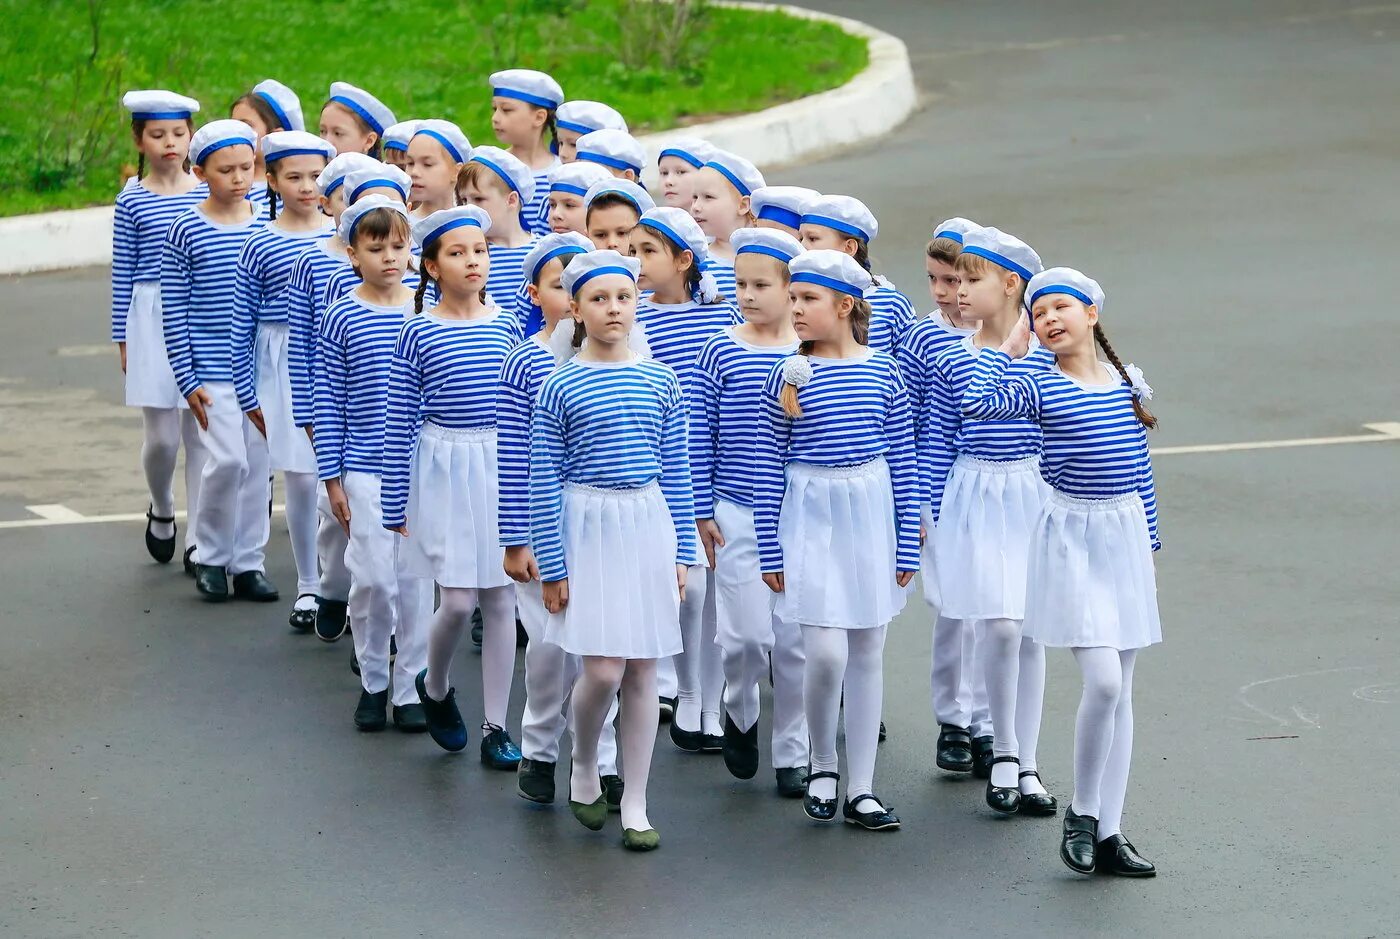 Песни для хора на 9 мая. Костюм моряков для школьников. Костюм для маршировки. Форма моряка для детей. Военная форма для школьников.